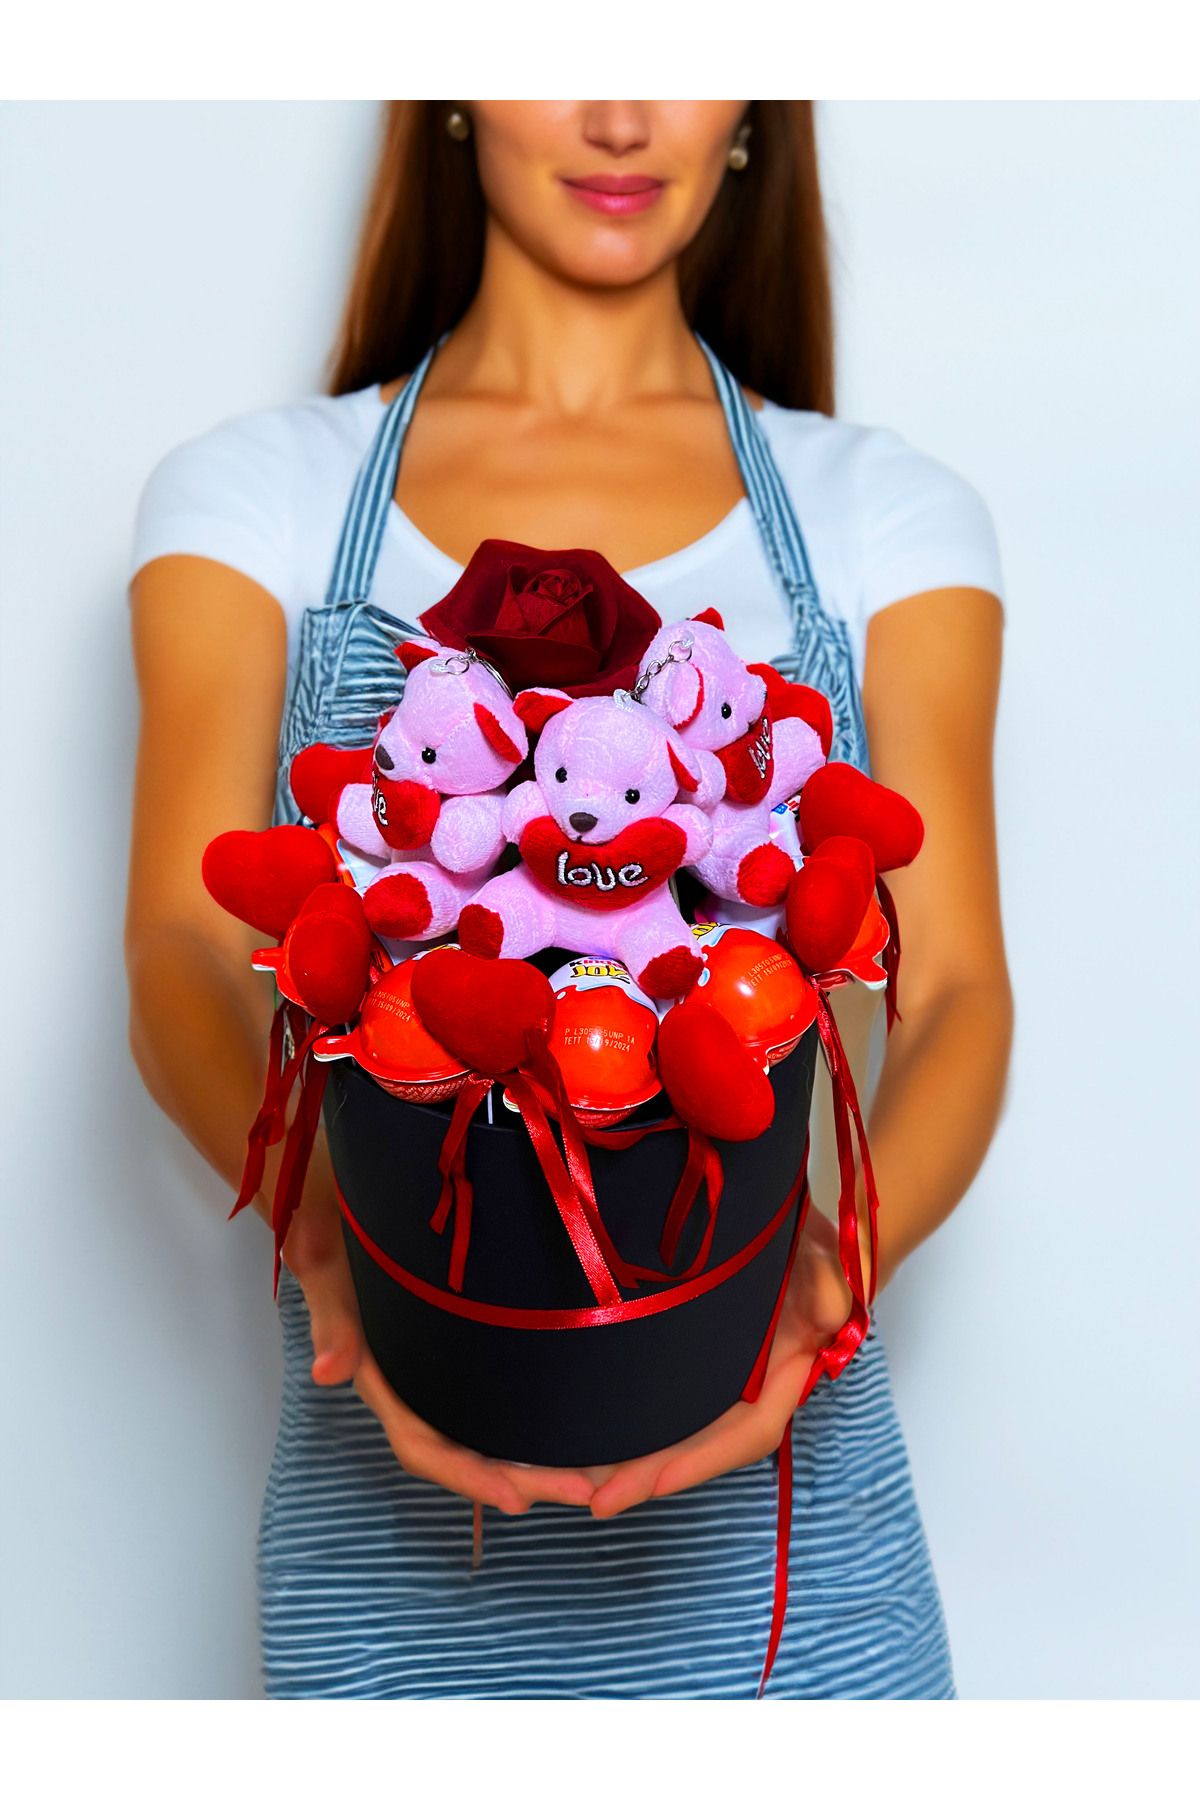 lenostra Sevgiliye Hediye Özel Aranjman 10 Kinder Joy 5 Minik Ayıcık ve Kırmızı Gül